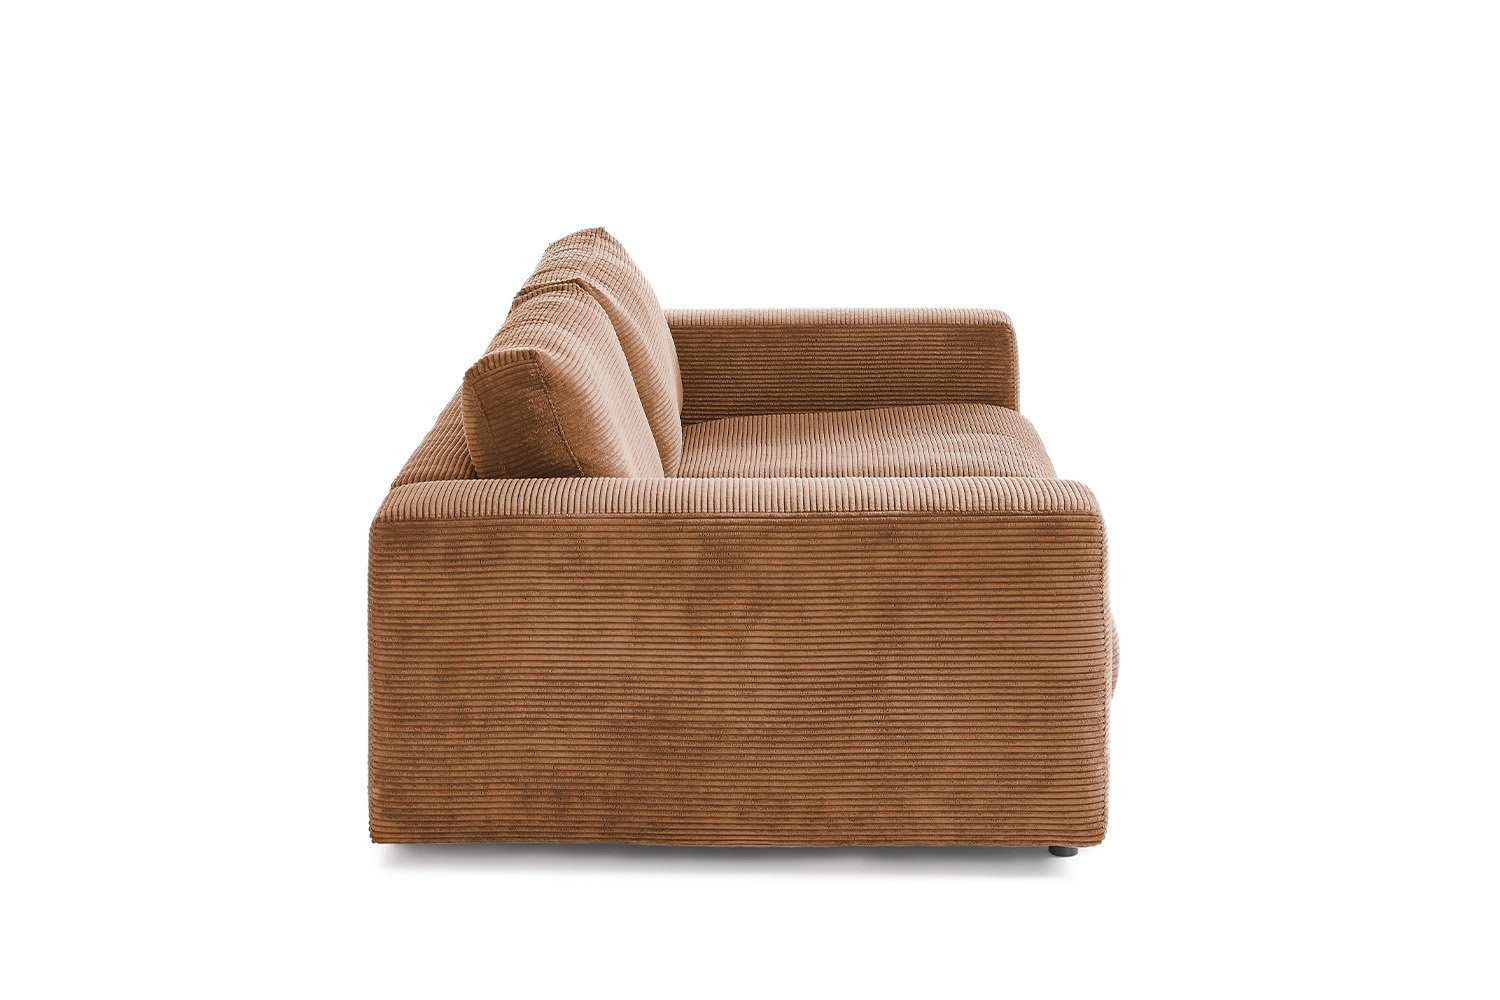 3-Sitzer MADELINE, Sofa Cord 2-Sitzer rost Farben versch. od. KAWOLA